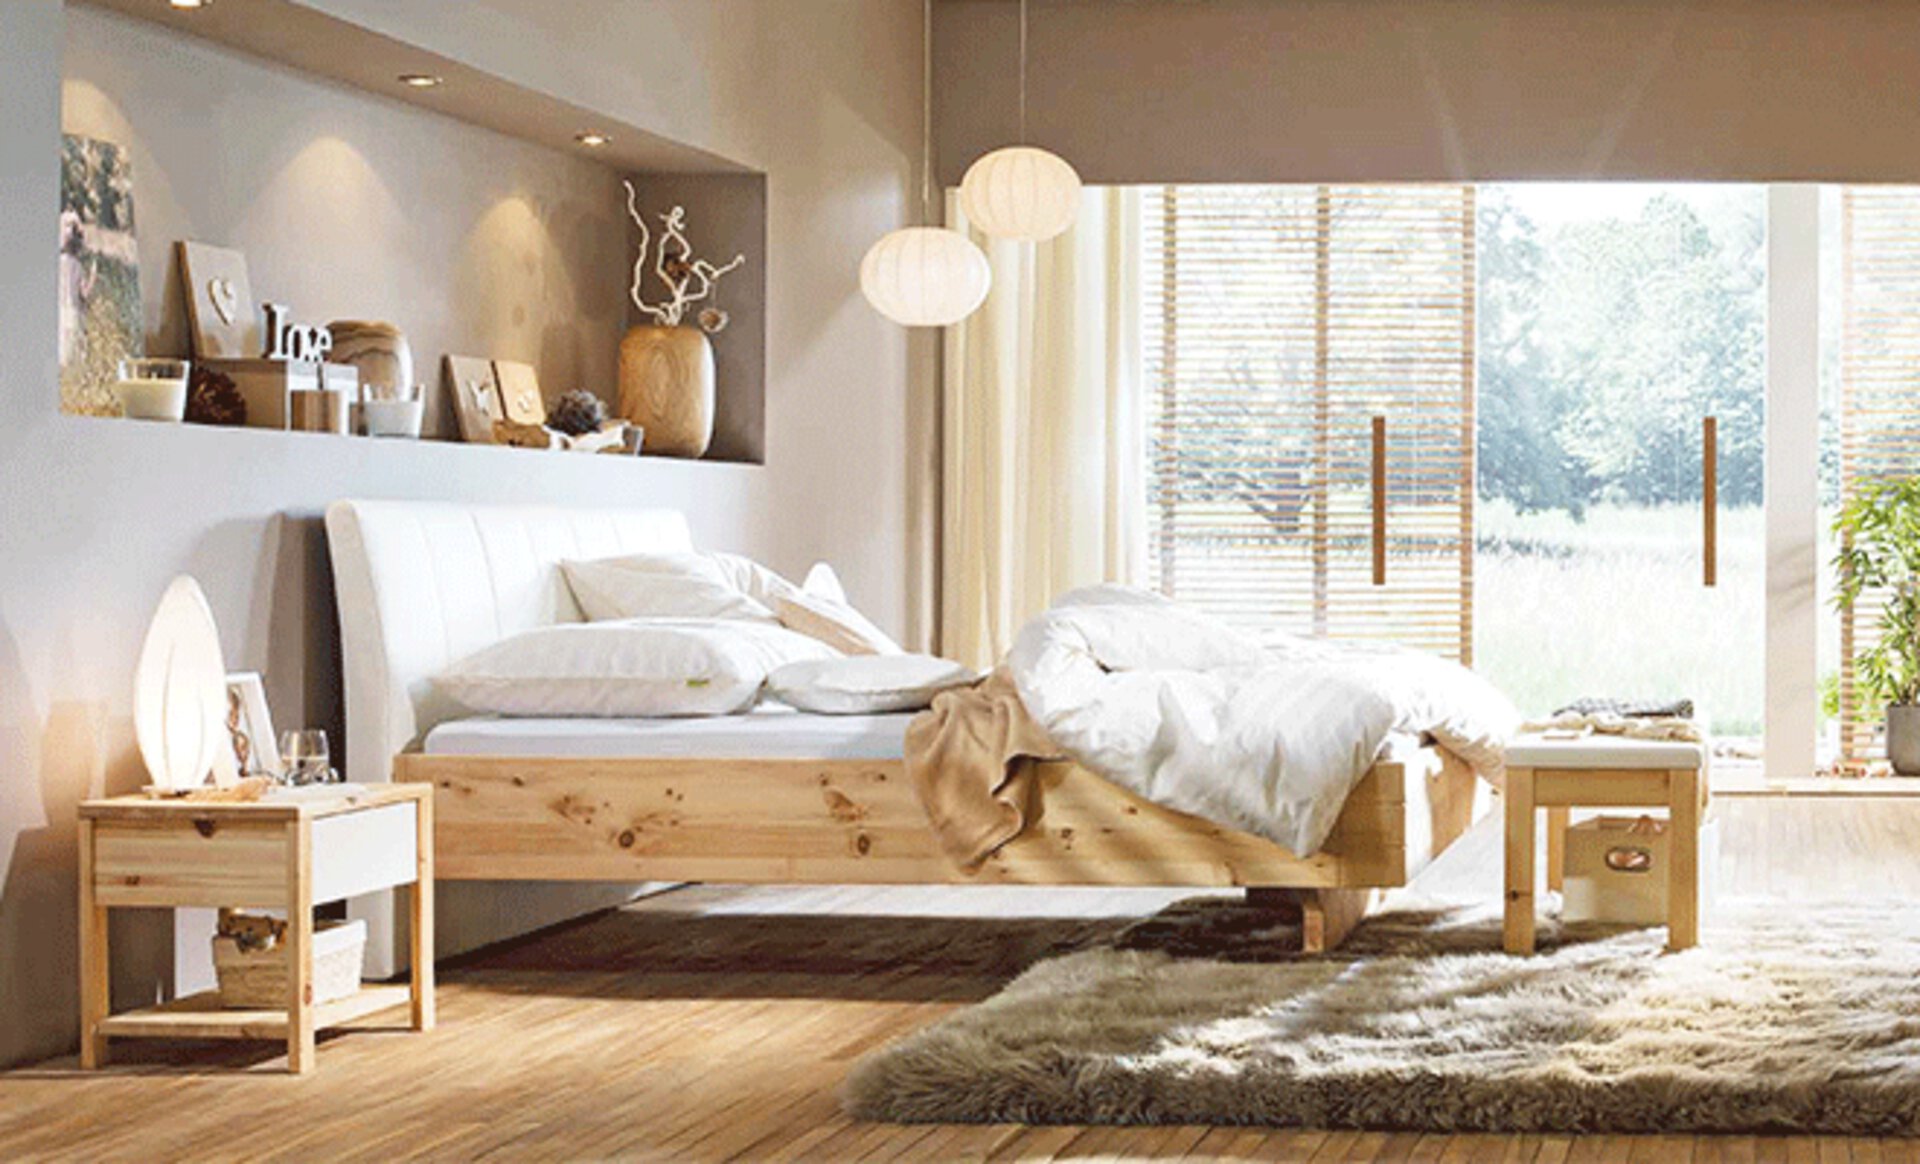 Schlafzimmerausschnitt im Landhausstil mit Bett und Schränken aus naturbelassenem Holz. Die Wand ist in warmem Beige gestrichen und auf dem Boden liegt ein flauschiger Hochflorteppich in dunklerem Beige.